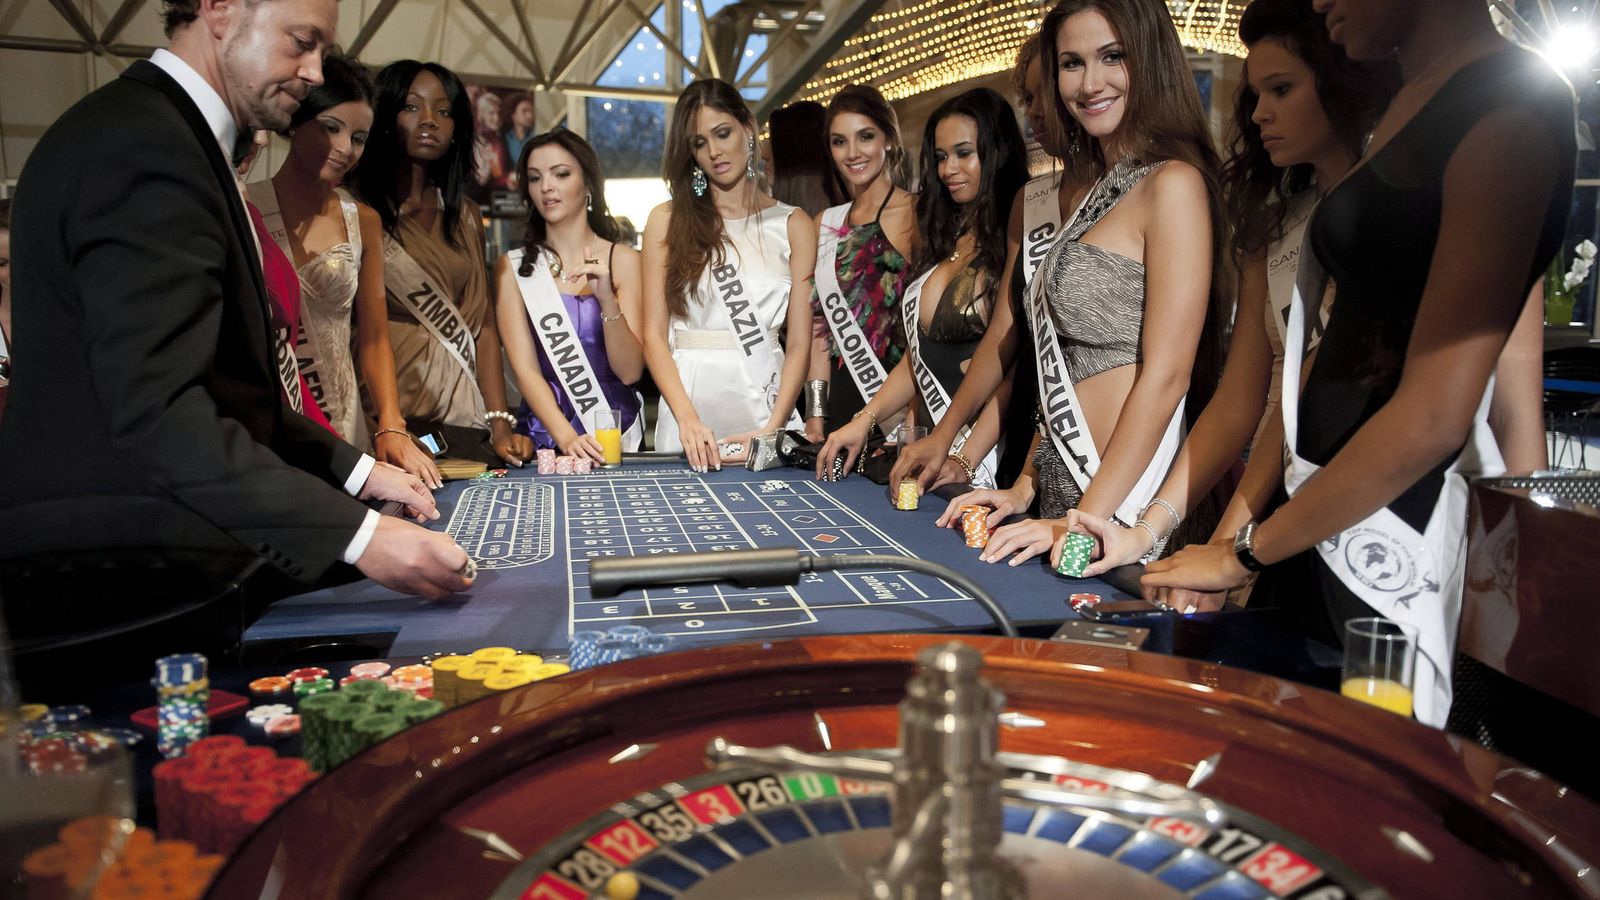 Foto: Candidatas al título del concurso de belleza "Top Models of the World" participan en un juego de ruleta en el Casino Hohensyburg de Dortmund (Alemania). (EFE)